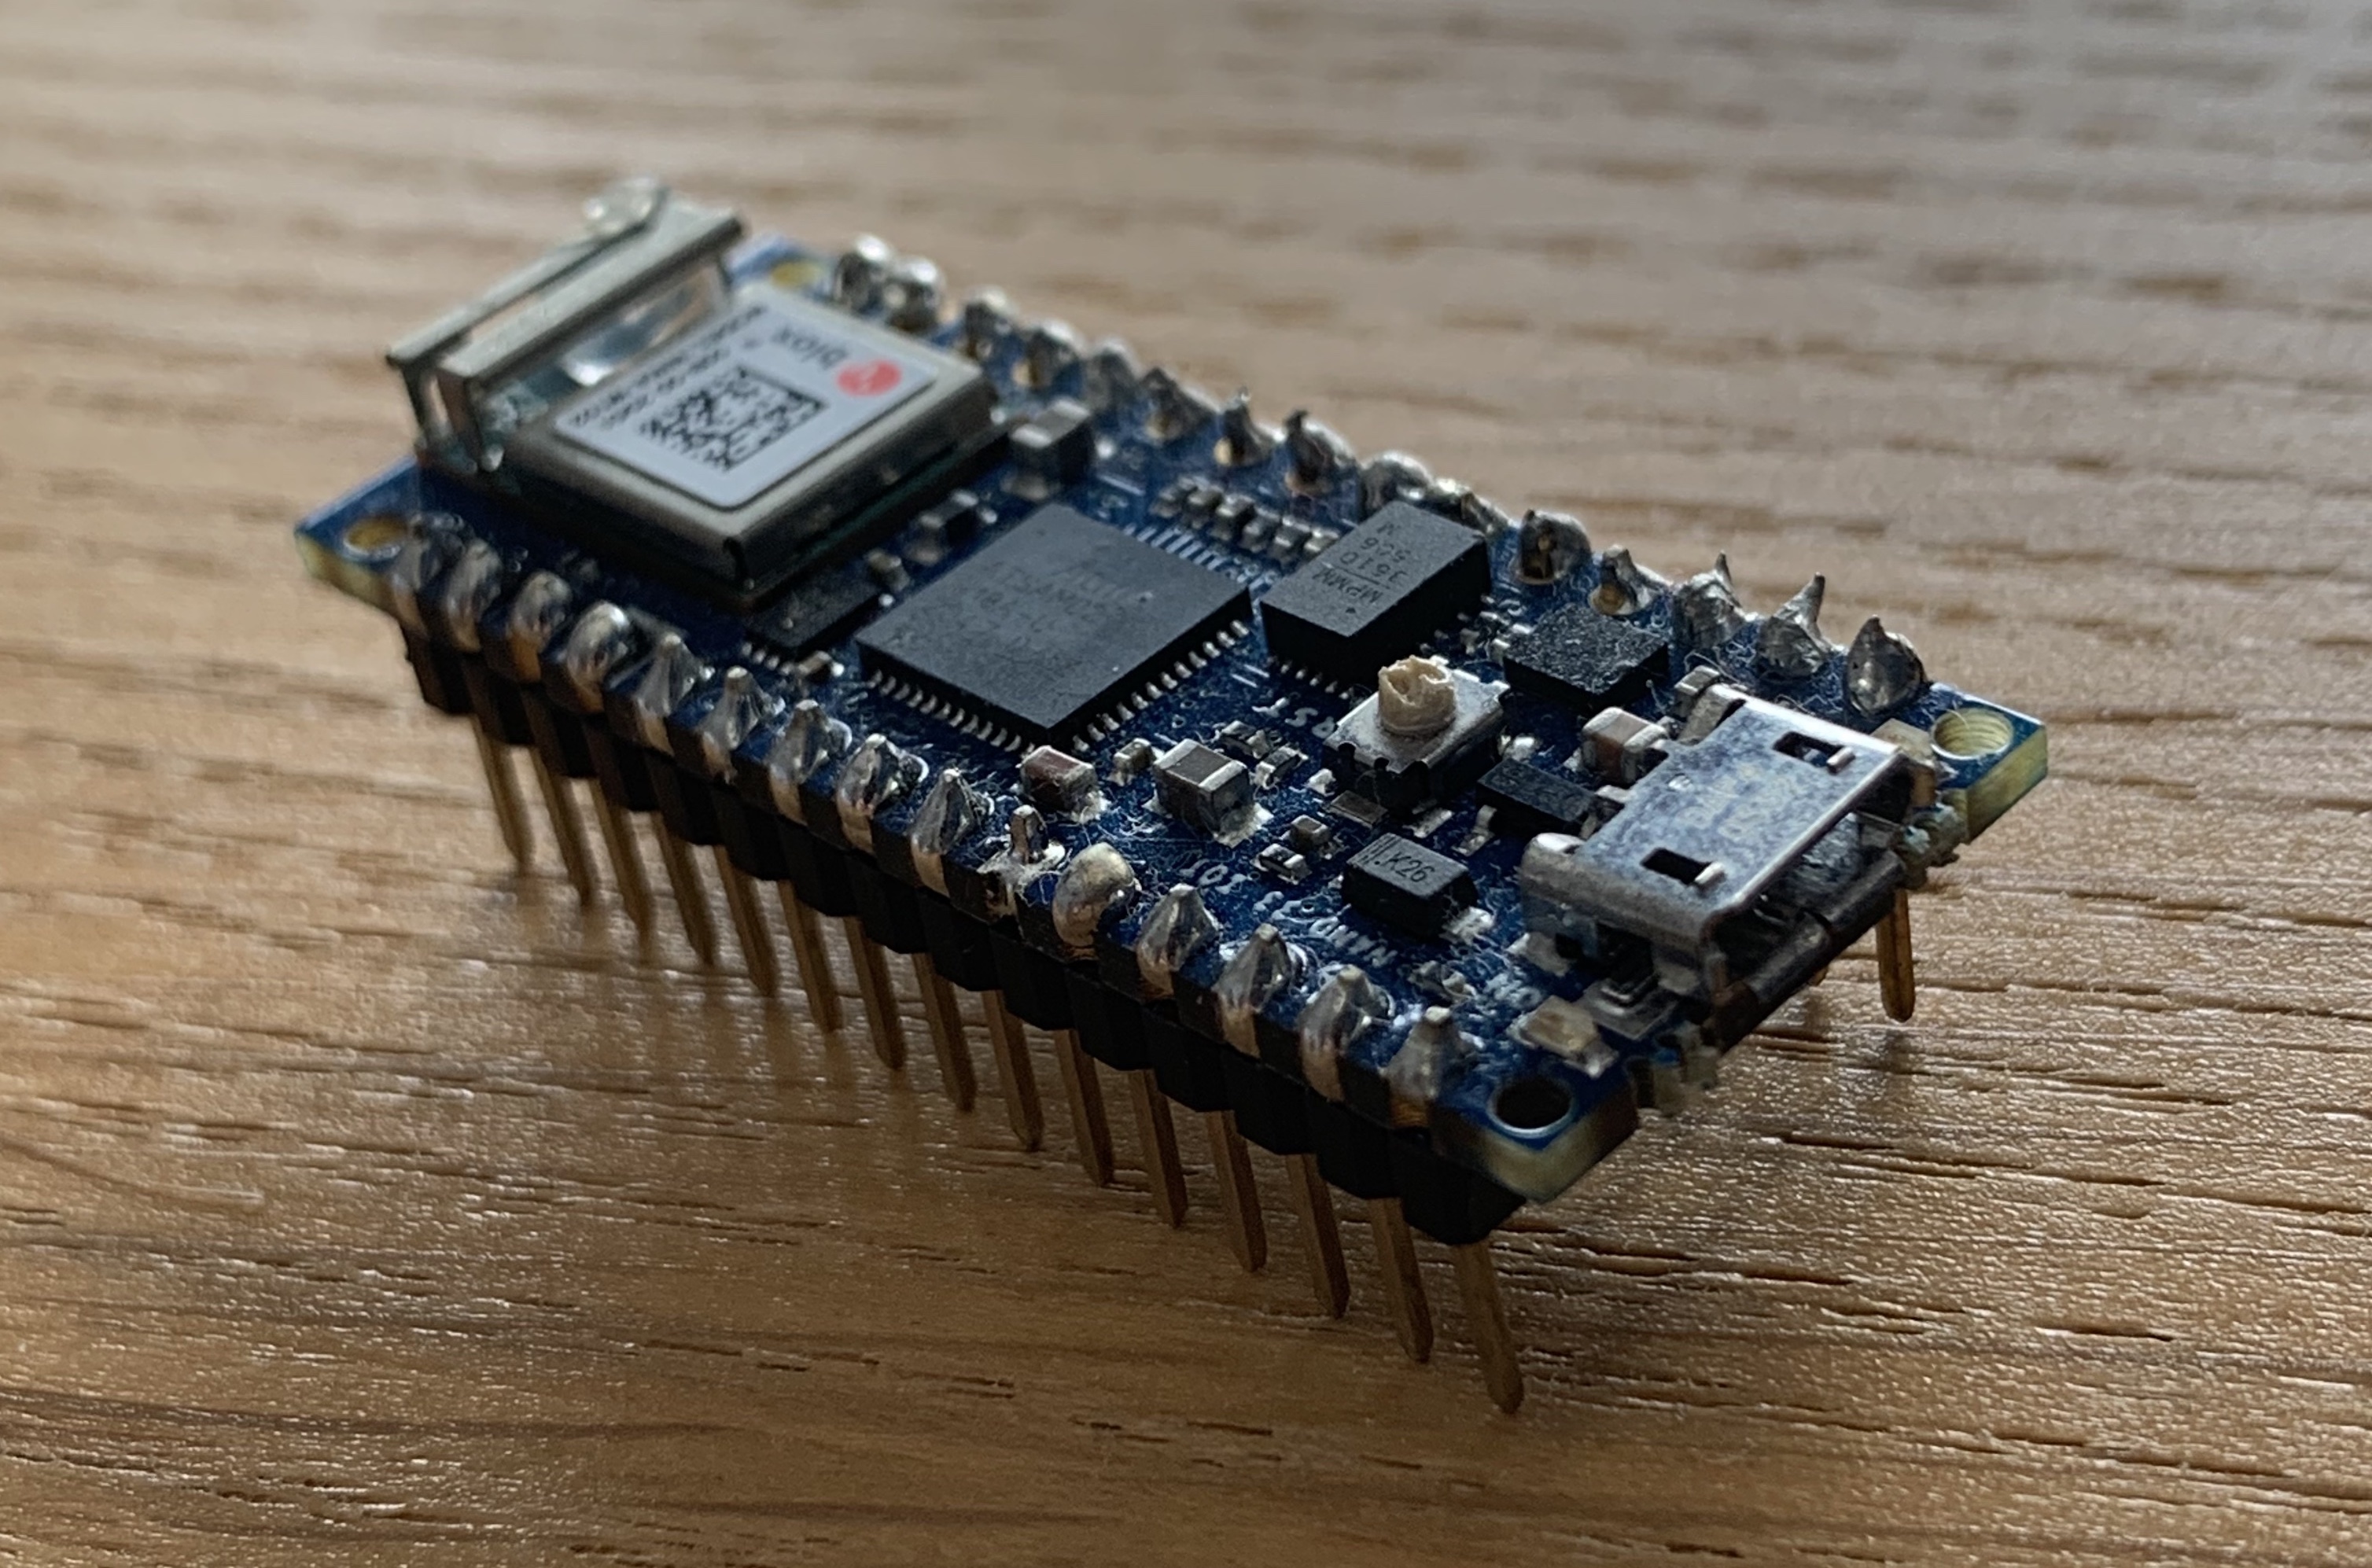 My Arduino Nano